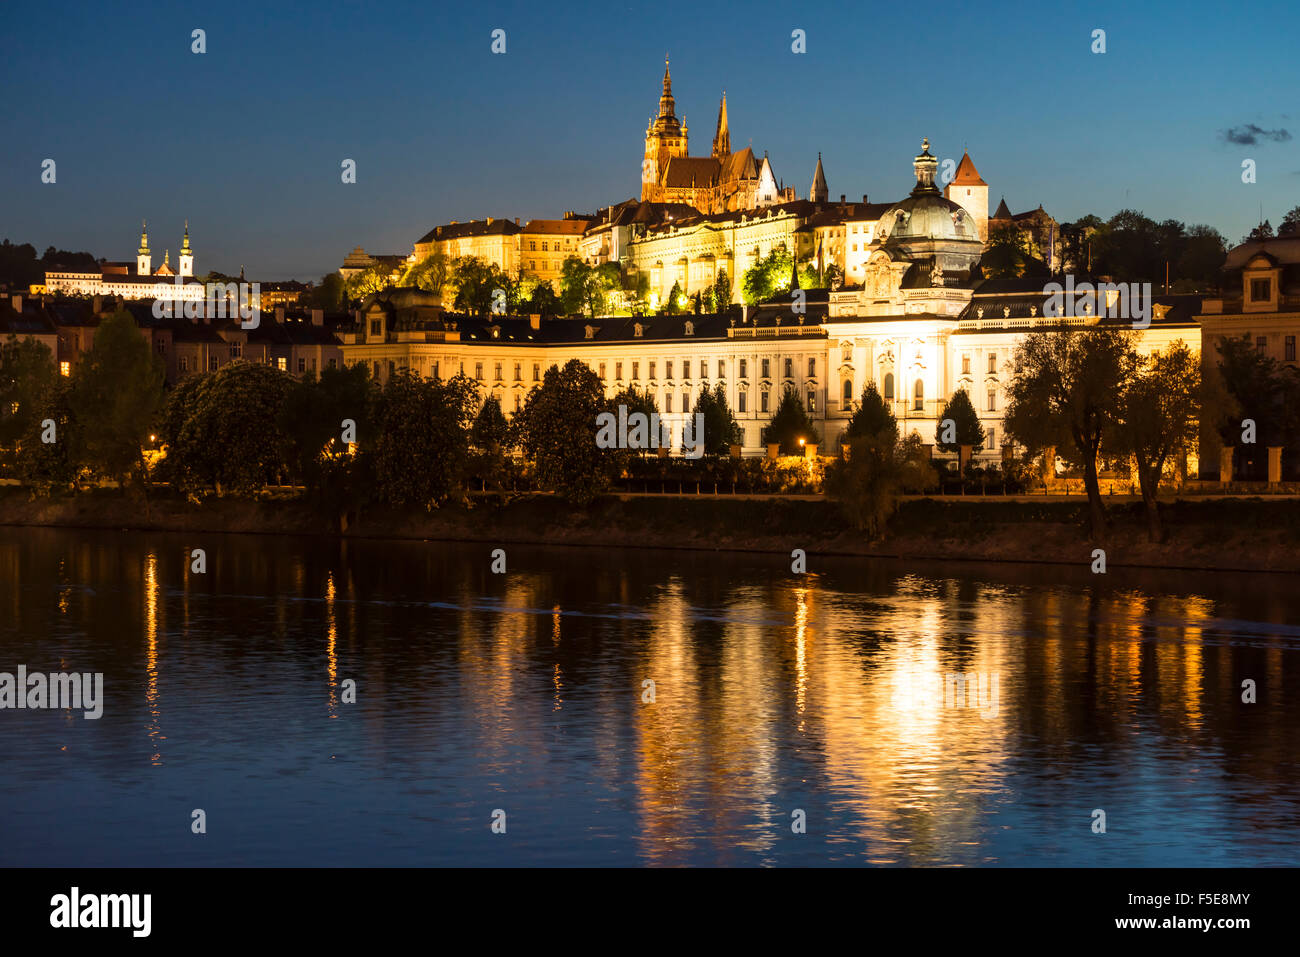 San Vito la cattedrale e il Castello di Praga illuminata al crepuscolo, Sito Patrimonio Mondiale dell'UNESCO, Praga, Repubblica Ceca, Europa Foto Stock